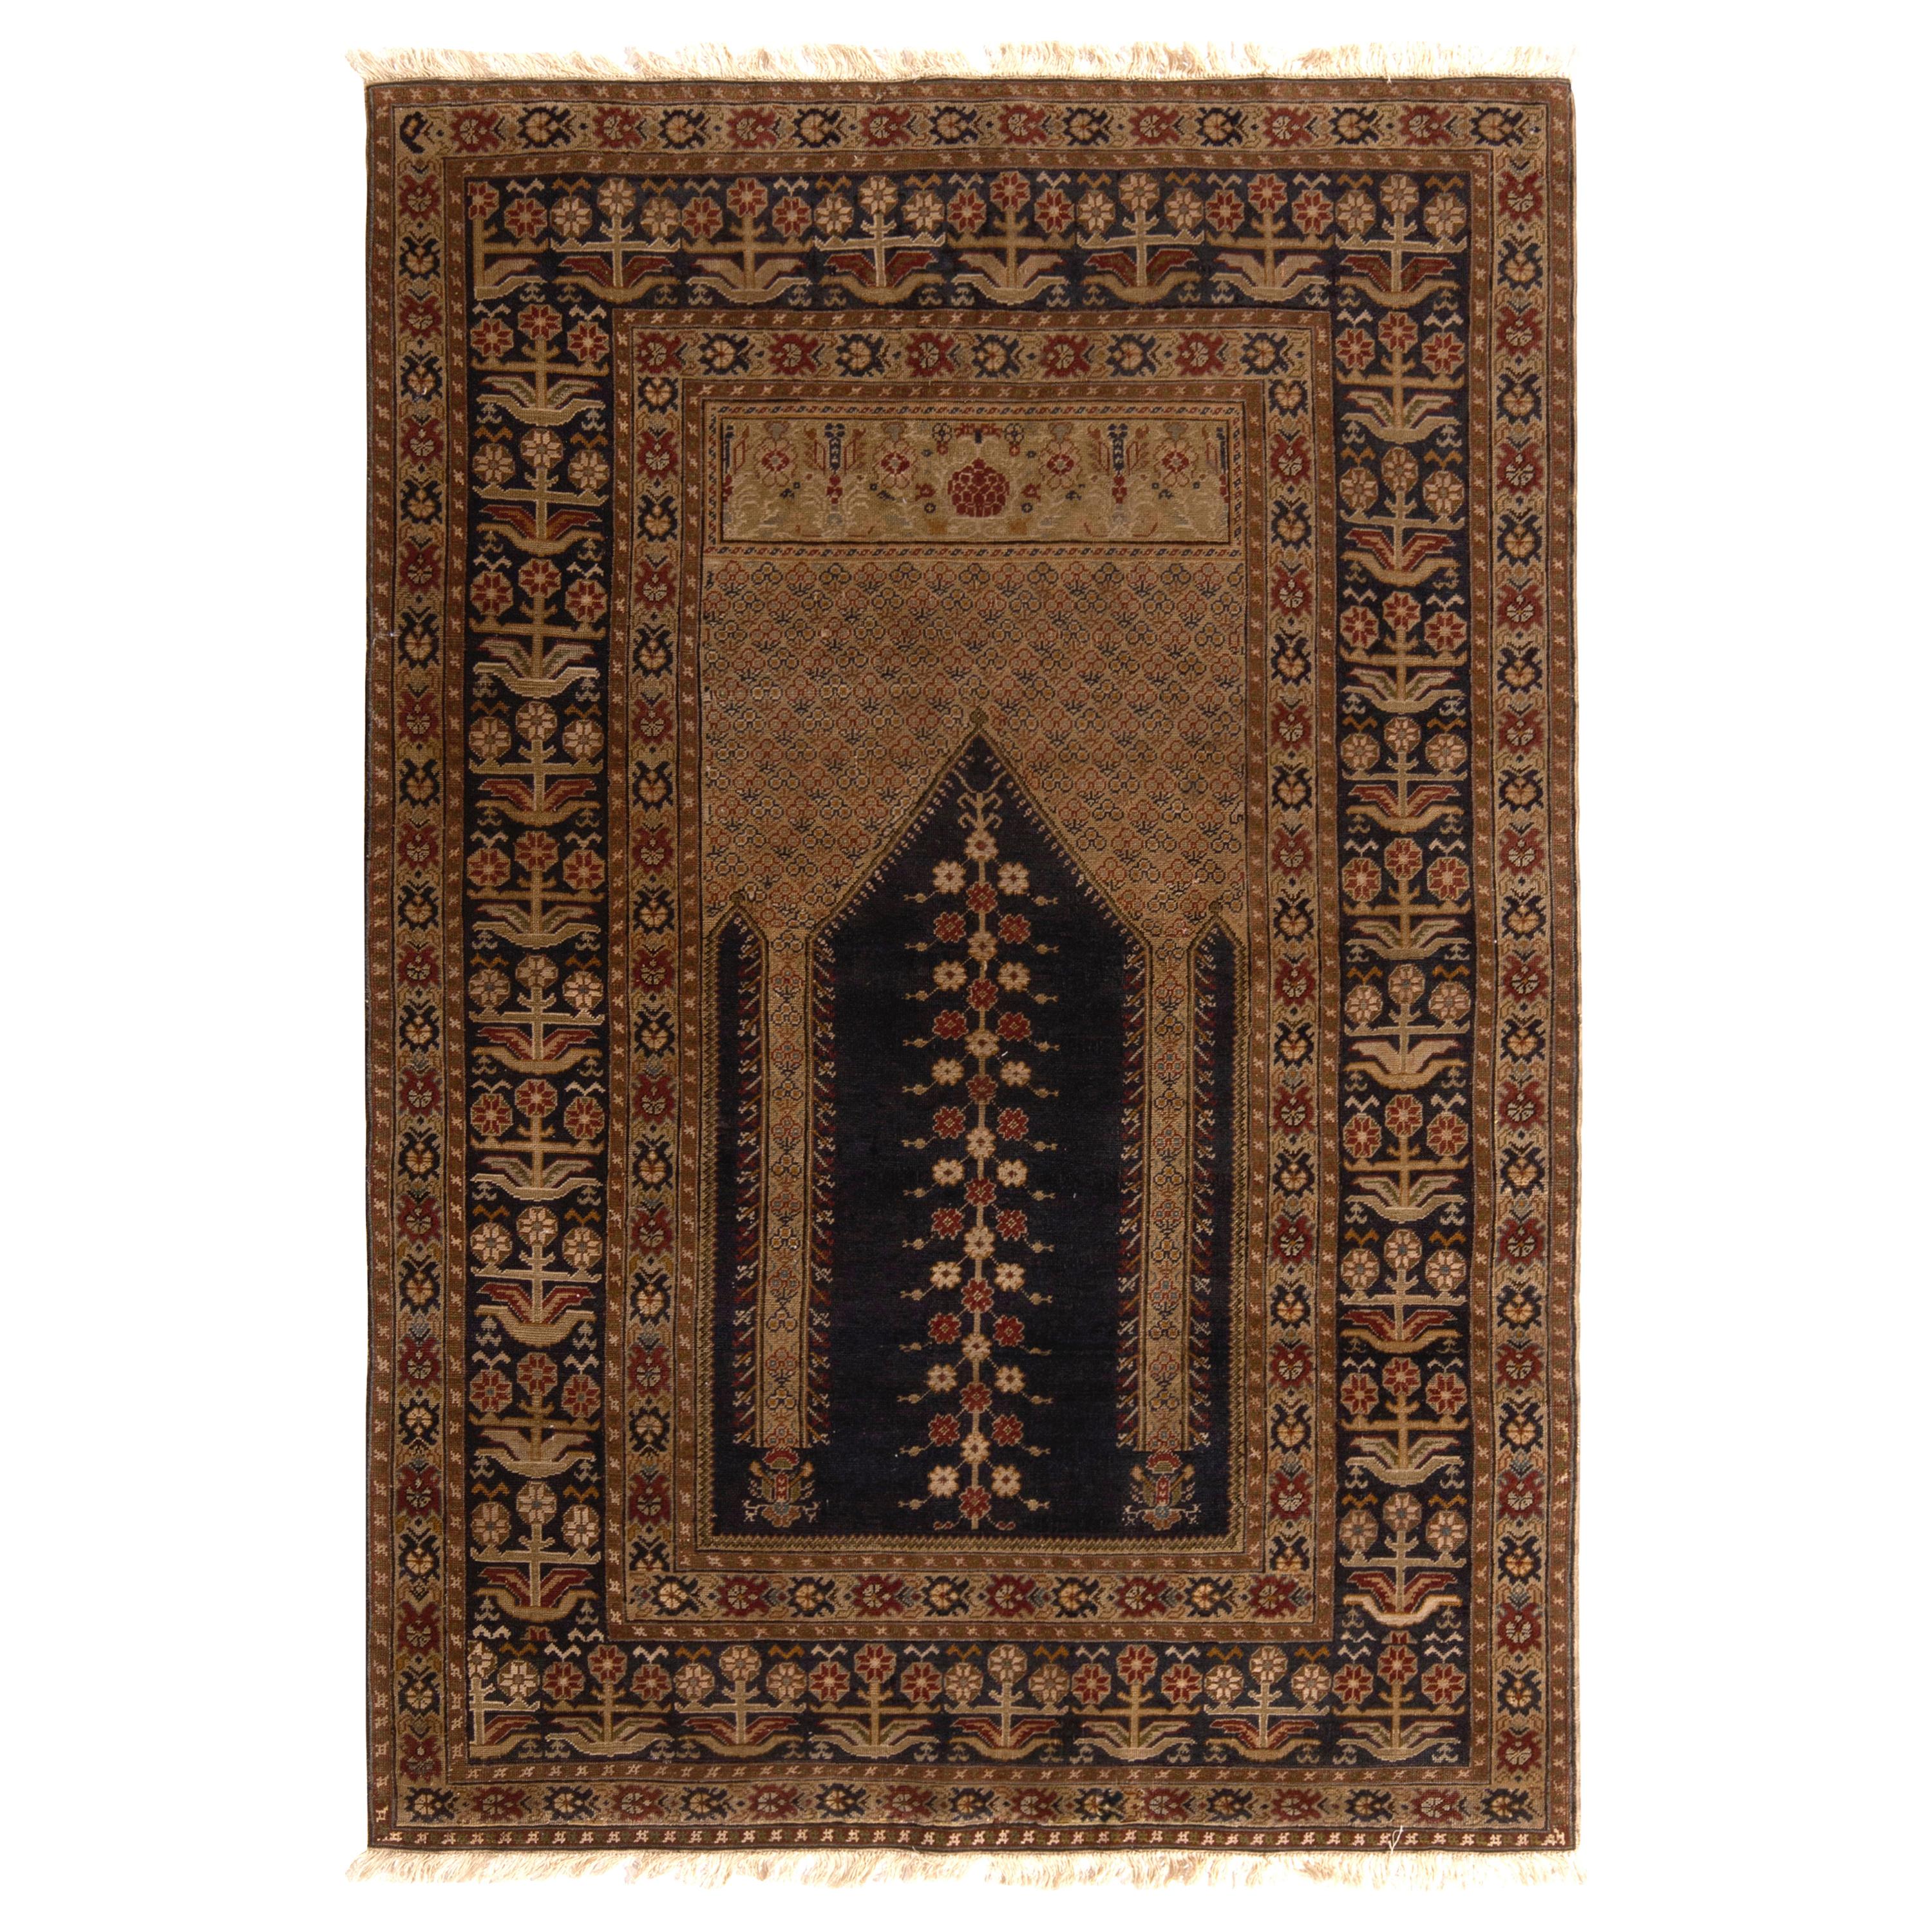 Antique Ghiordes Rug Beige-Brown & Black Geometric Mihrab Pattern by Rug & Kilim For Sale